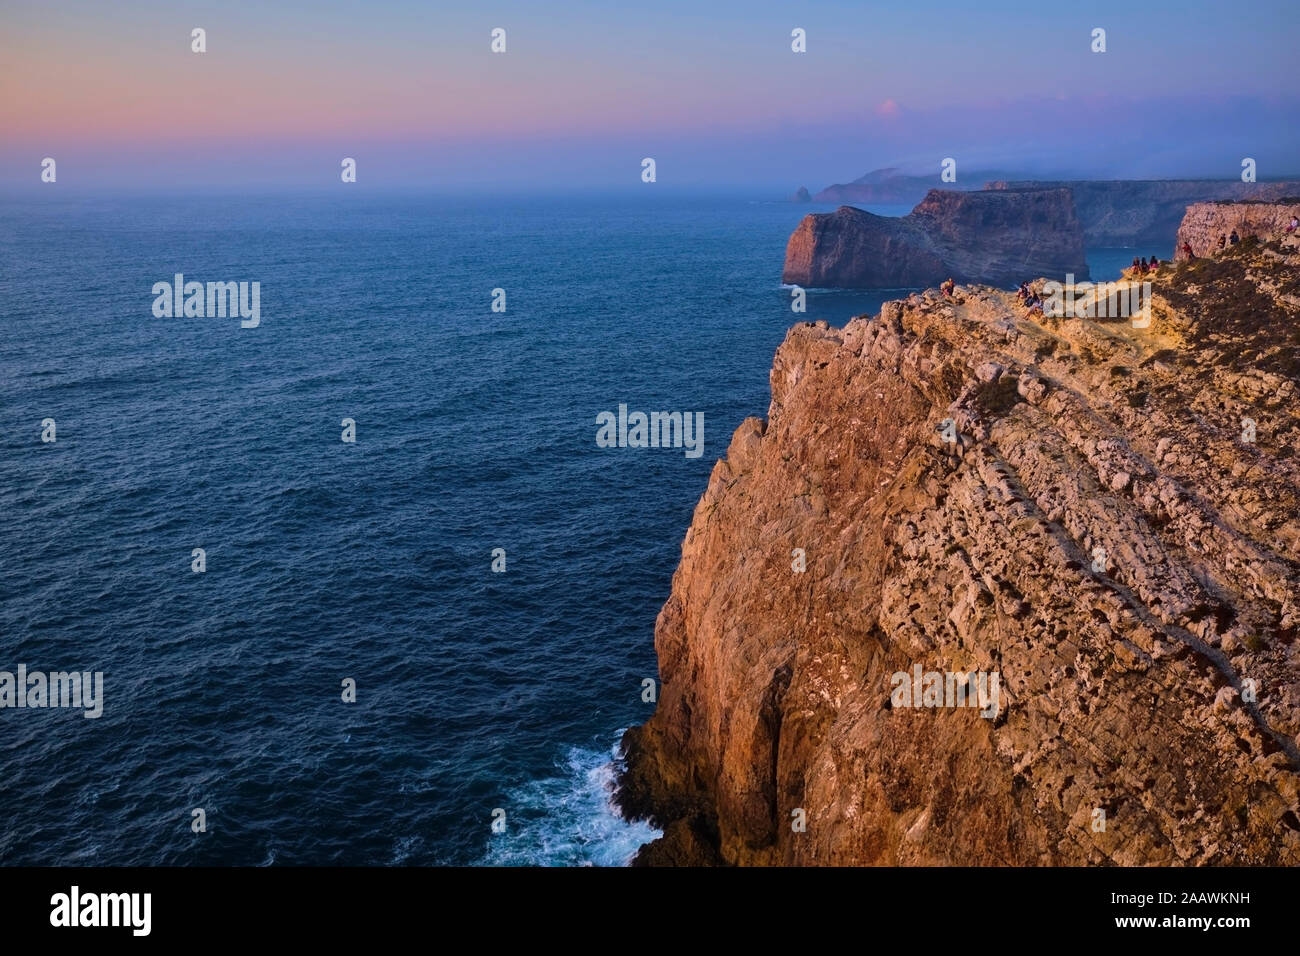 Portugal, Algarve, con vistas panorámicas del Cabo de San Vicente al amanecer Foto de stock